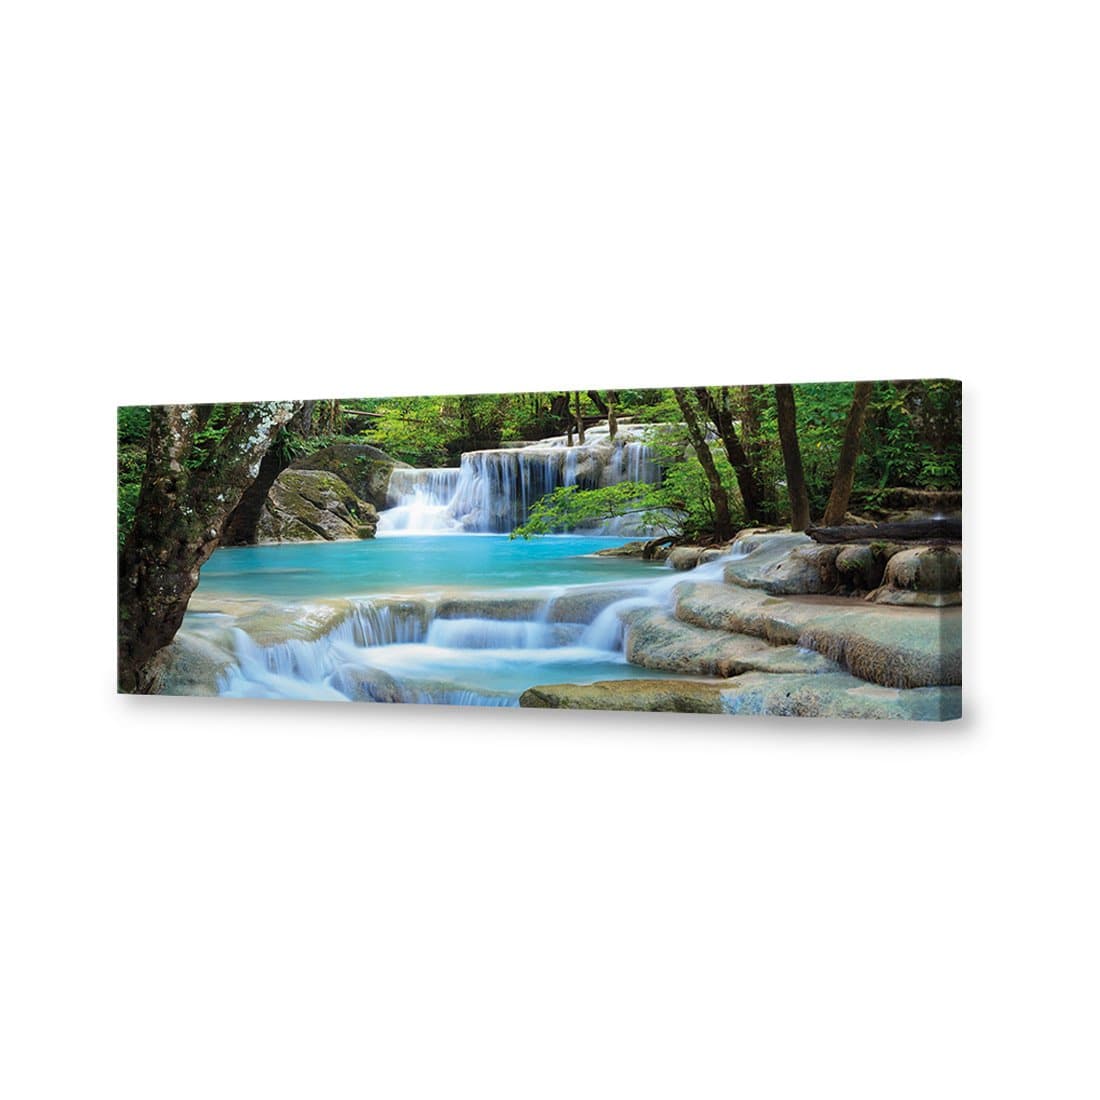 Soft Waterfalls Canvas Art-Canvas-Wall Art Designs-60x20cm-Canvas - No Frame-Wall Art Designs